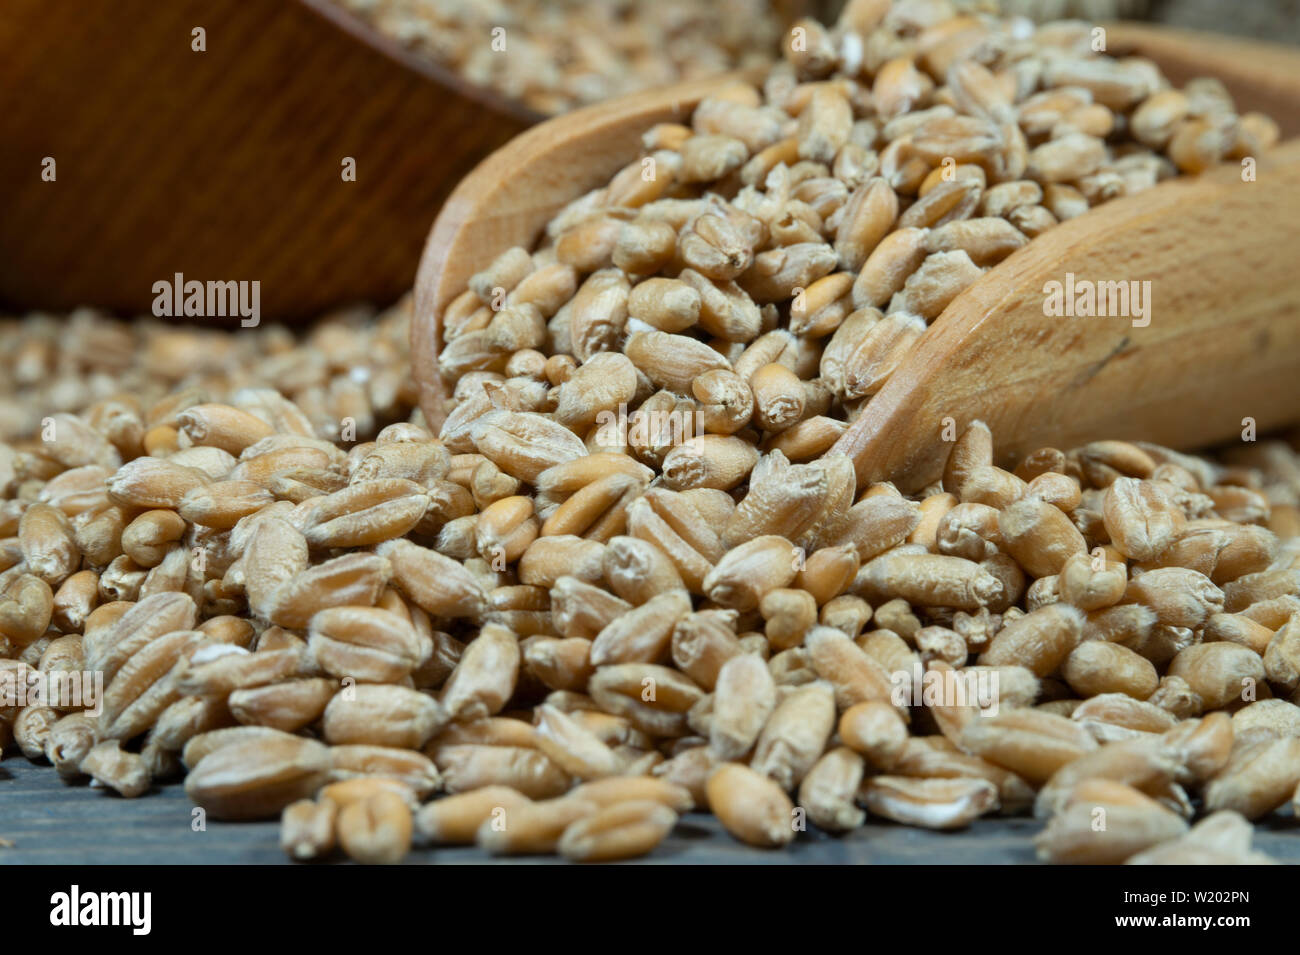 Les semences de blé se répandre à partir d'une pelle en bois avec des mûres et des oreilles neuves de blé vert dans une vue en gros, alimentation saine et nouvelle moisson concept avec c Banque D'Images